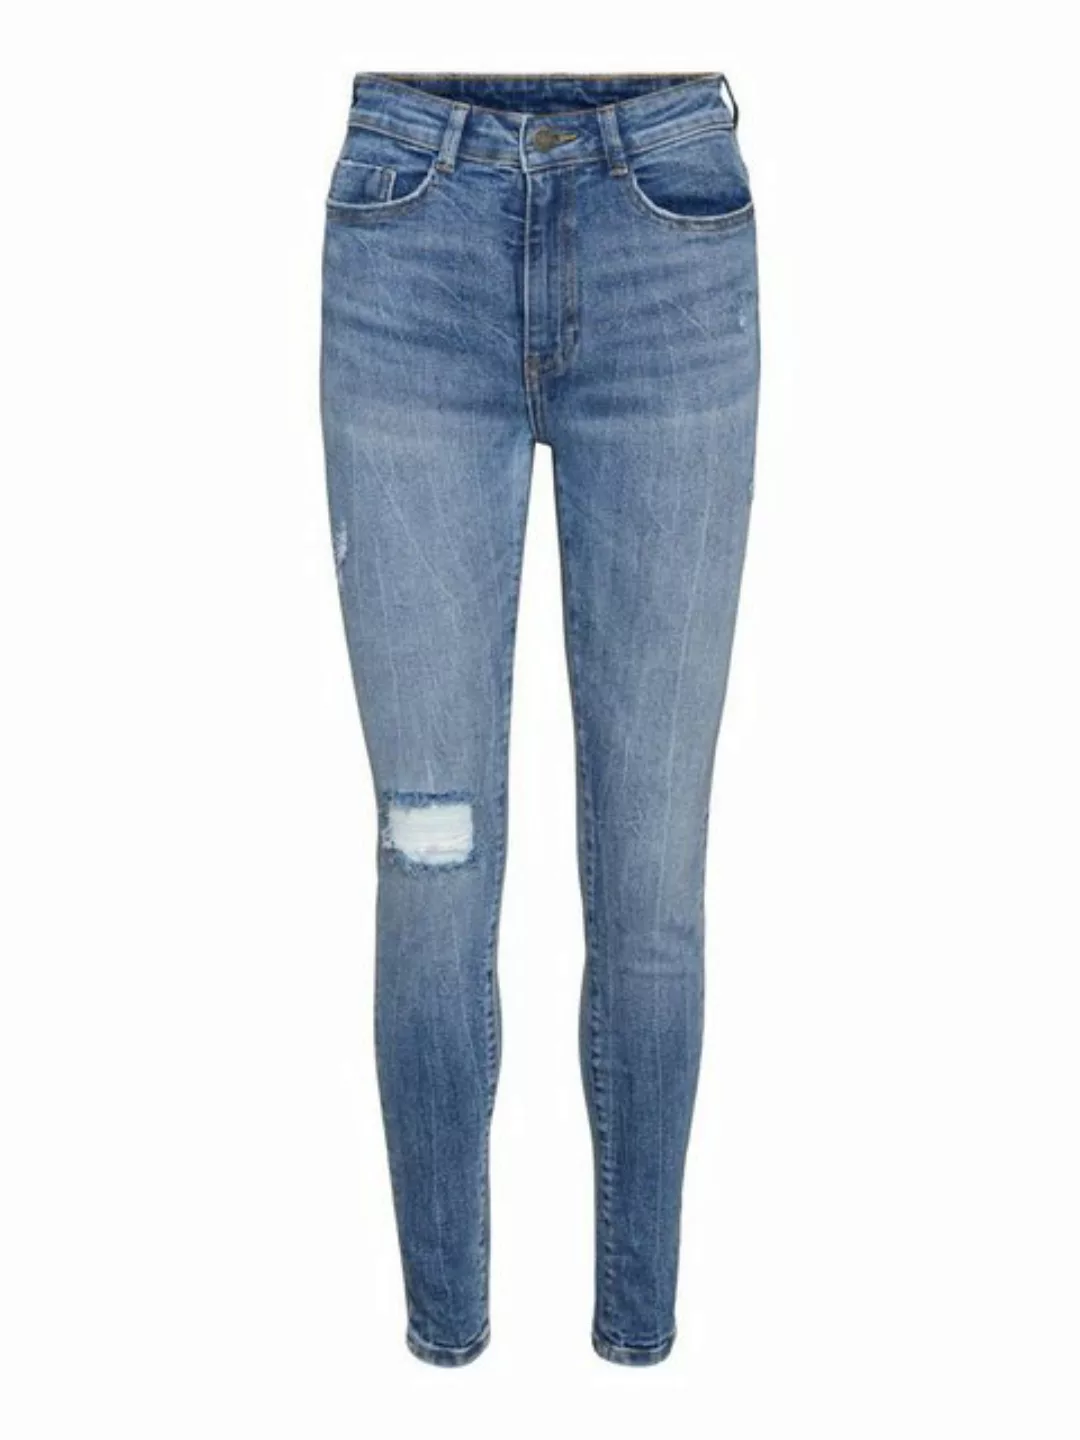 Noisy May Callie Skinny Des Az190mb Jeans Mit Hoher Taille 28 Medium Blue D günstig online kaufen